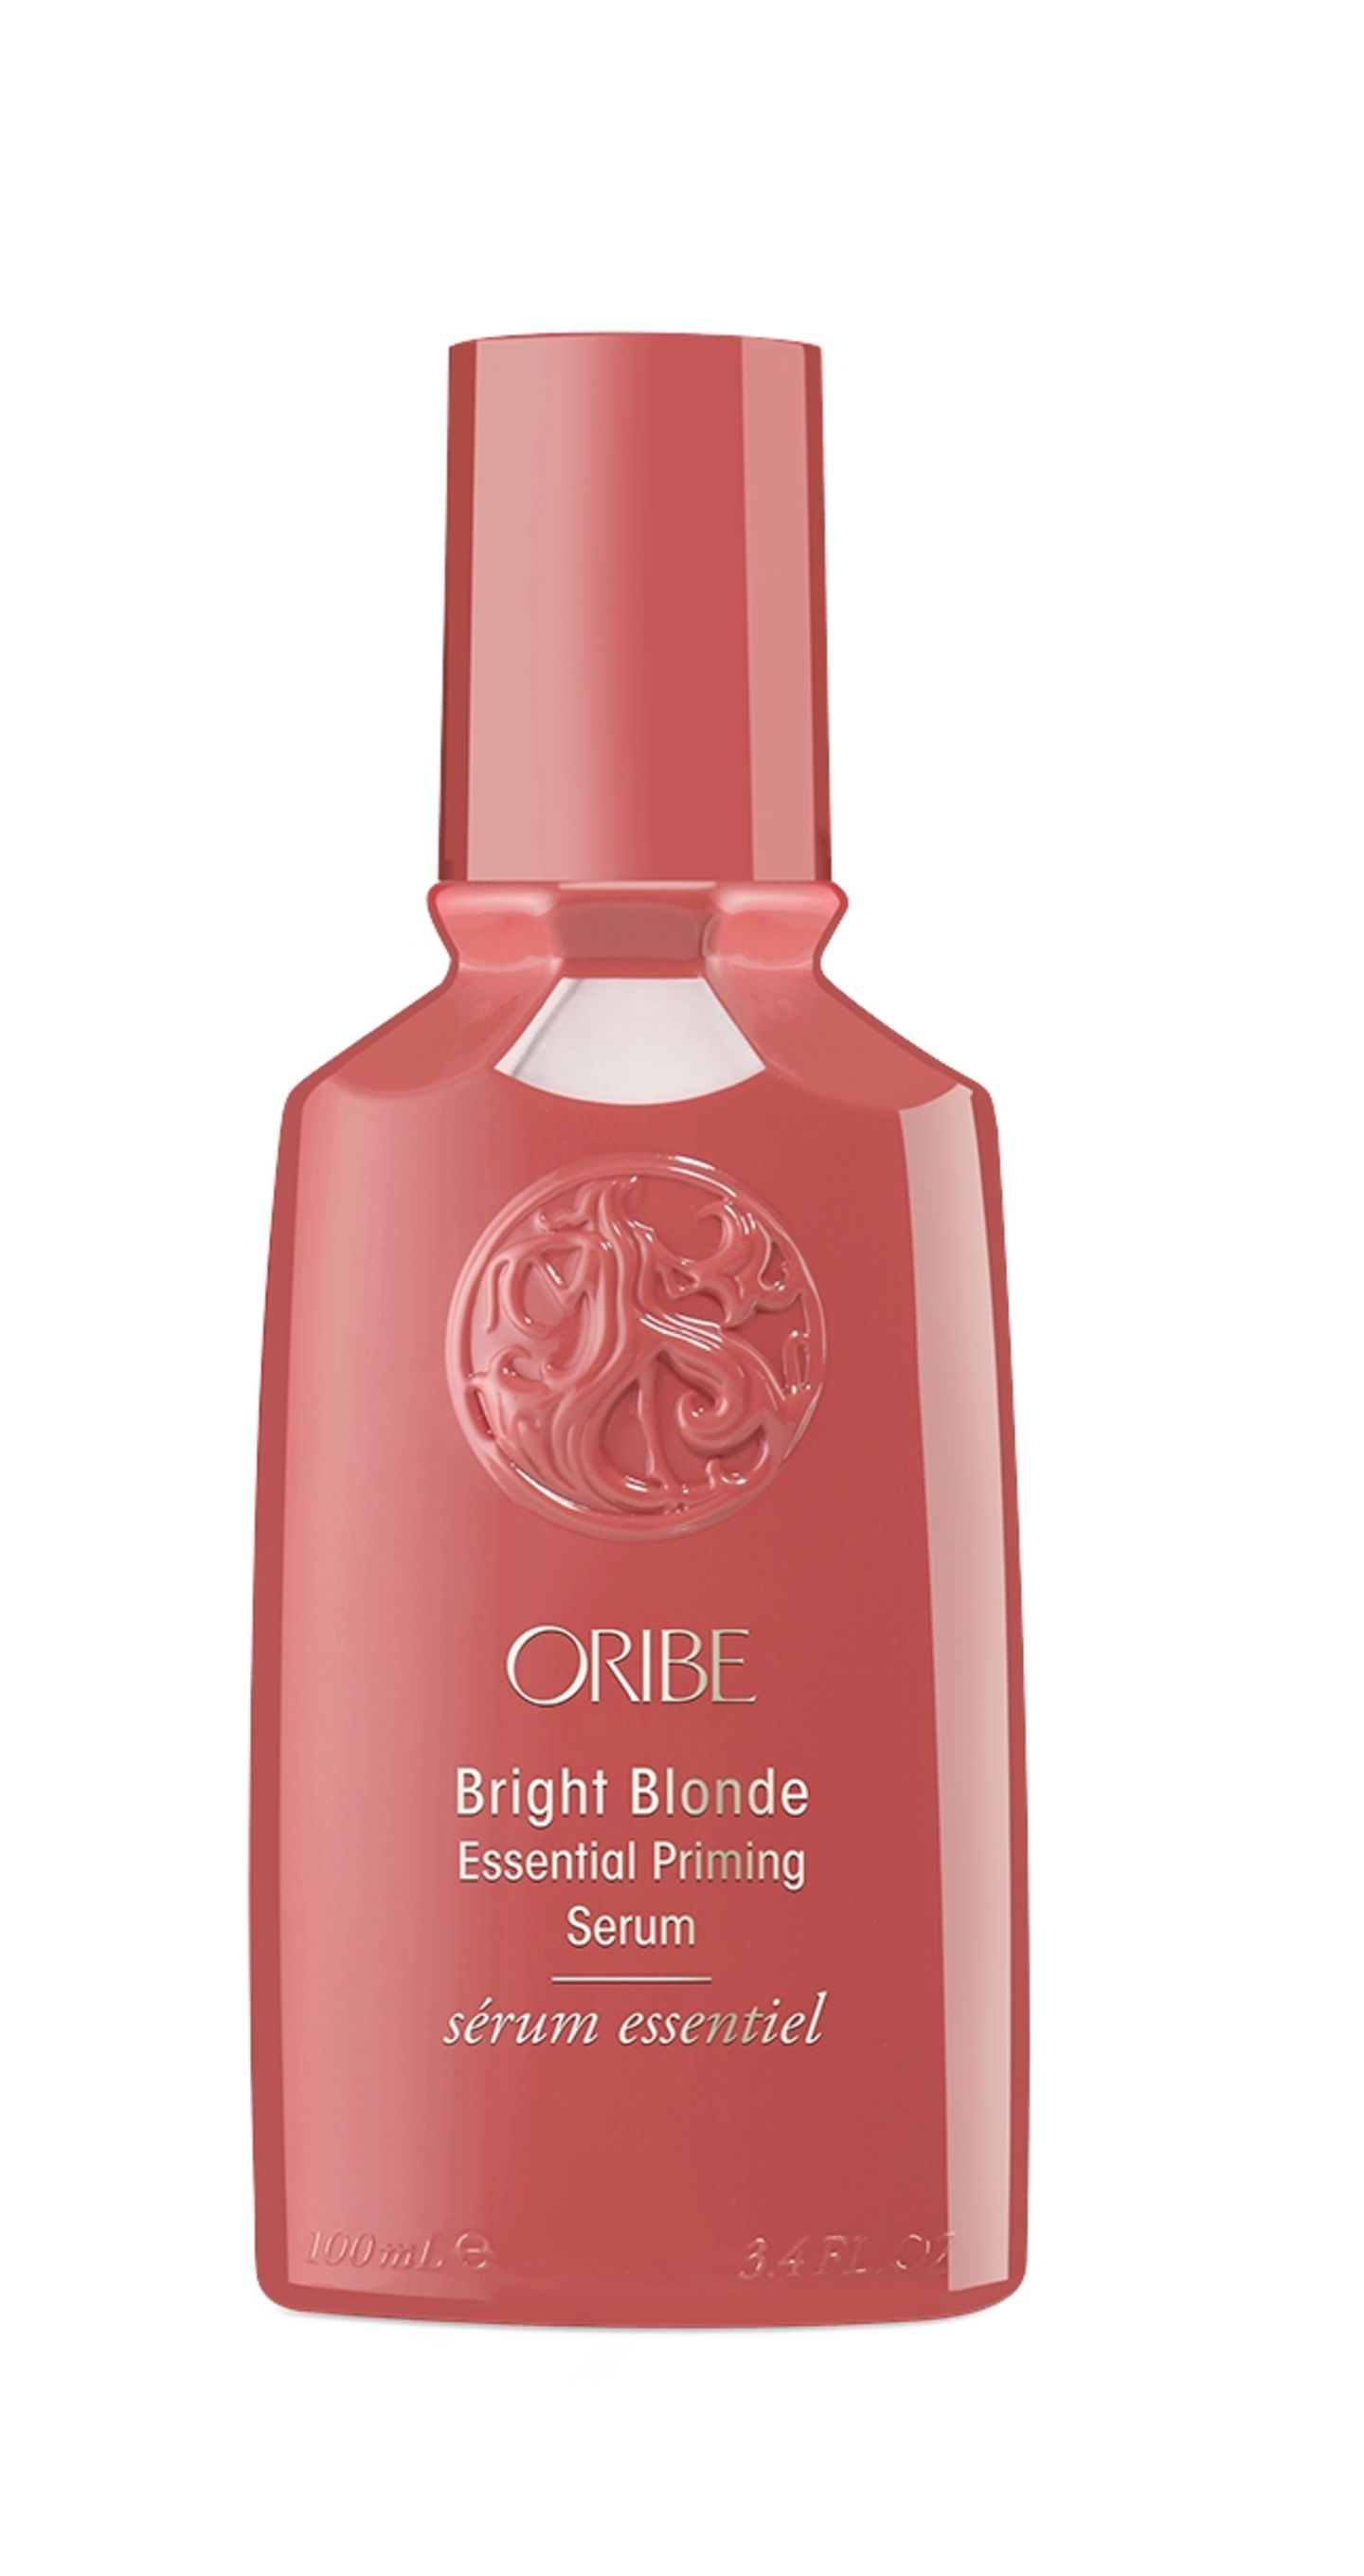 und hellt sanft auf: "Bright Blonde Essential Priming Serum" von Oribe, 100 ml ca. 46 Euro.